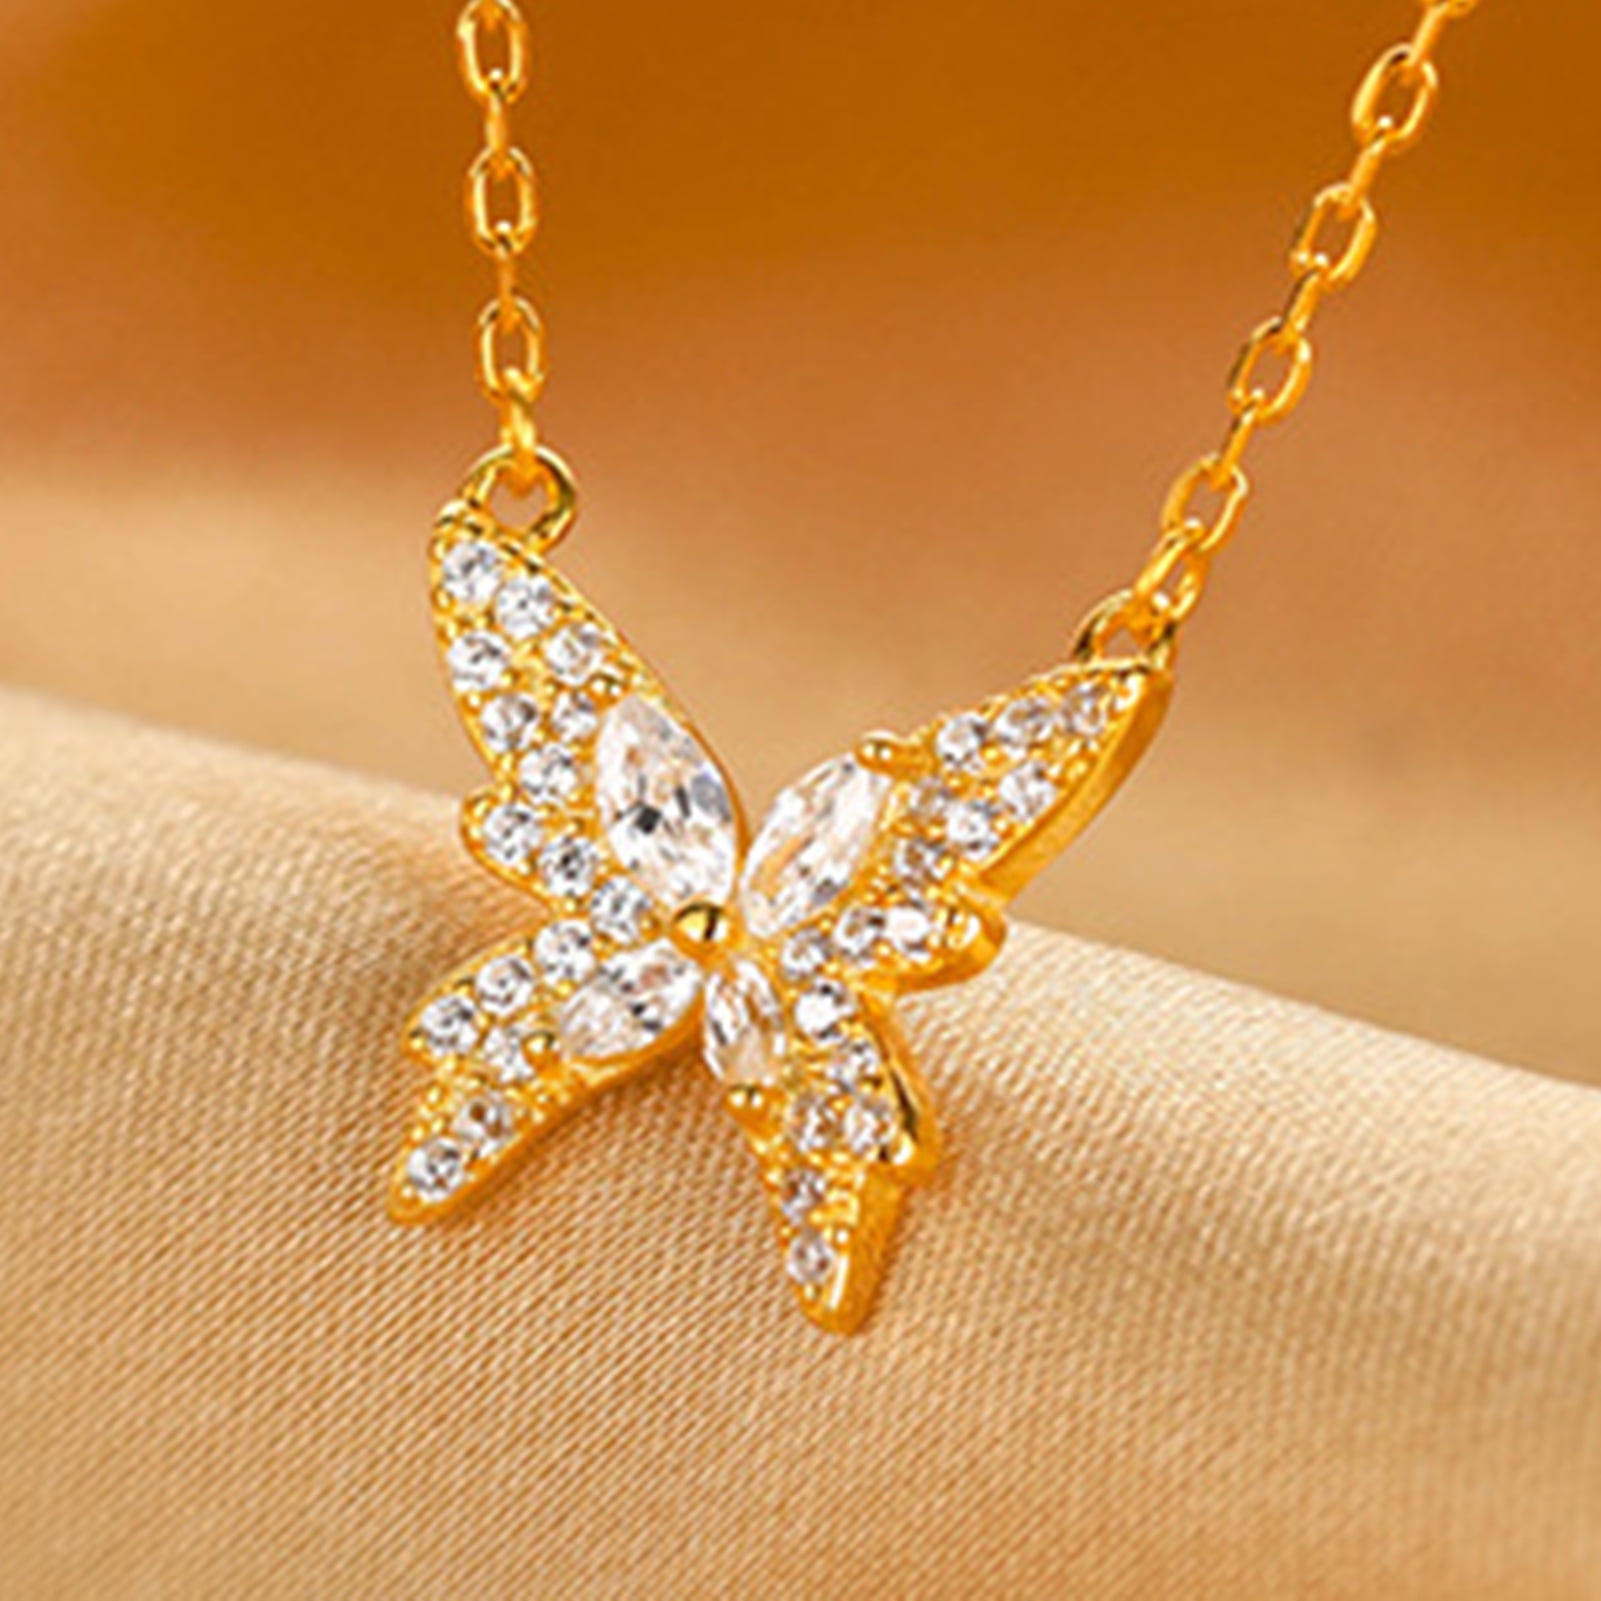 Swarovski Butterfly Necklace Gold 848552 | eBay